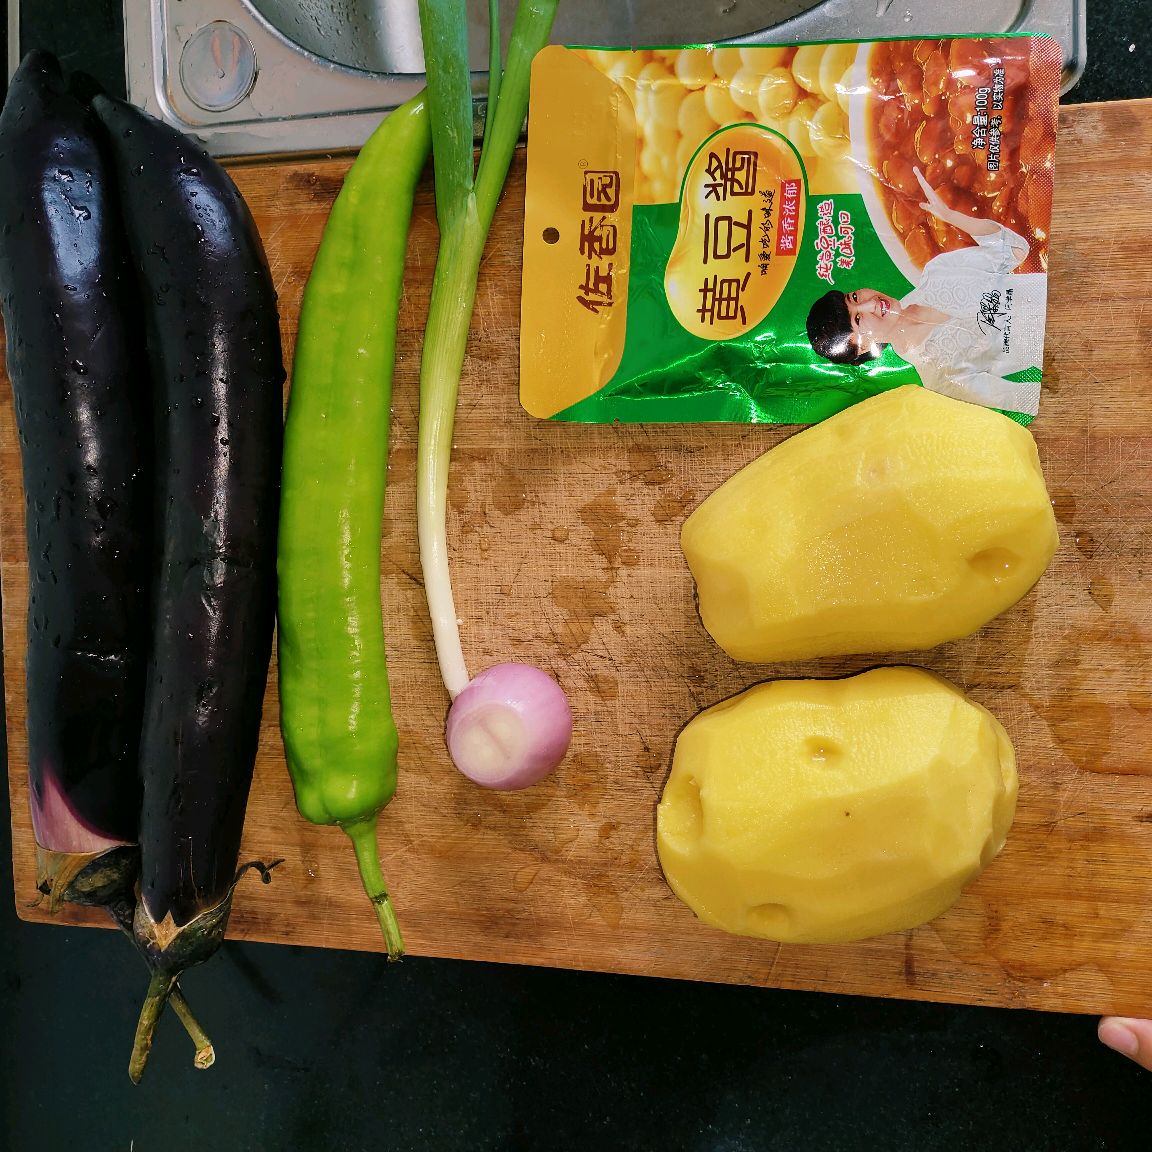 超级简单、健康的茄子烧土豆,超级简单、健康的茄子烧土豆的家常做法 - 美食杰超级简单、健康的茄子烧土豆做法大全